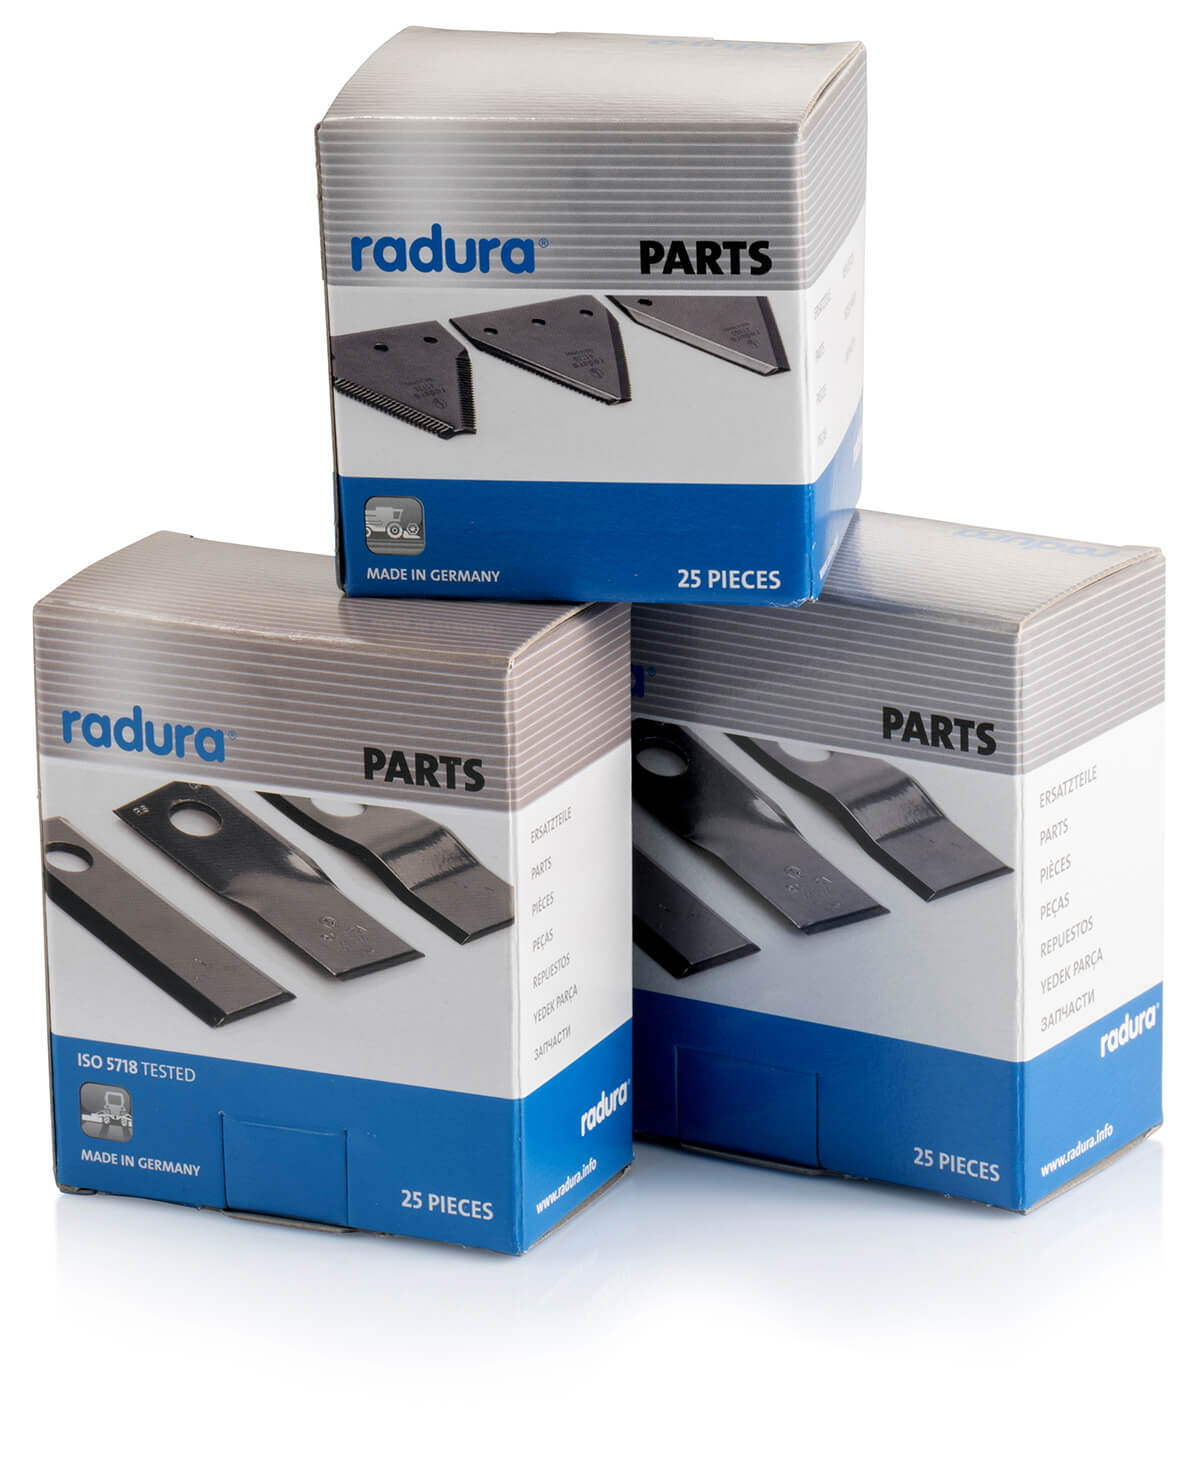 radura parts in boxes